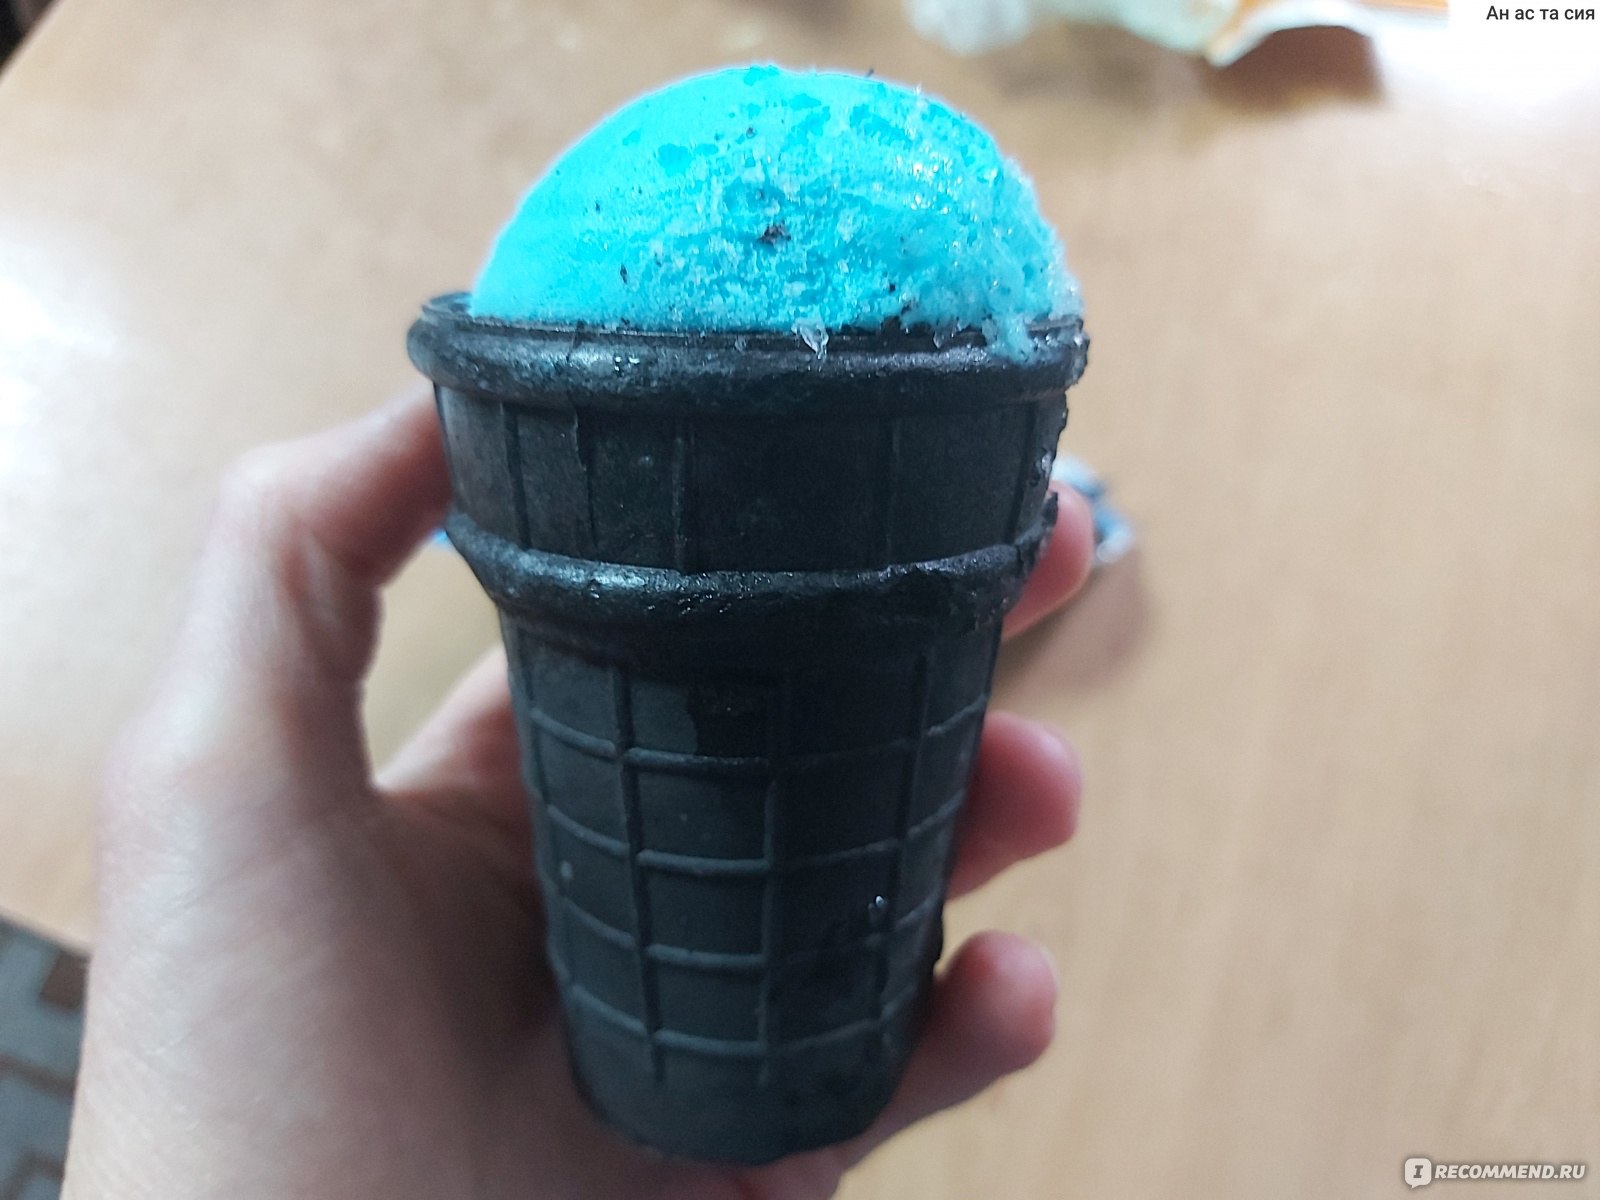 Мороженое в синем стаканчике